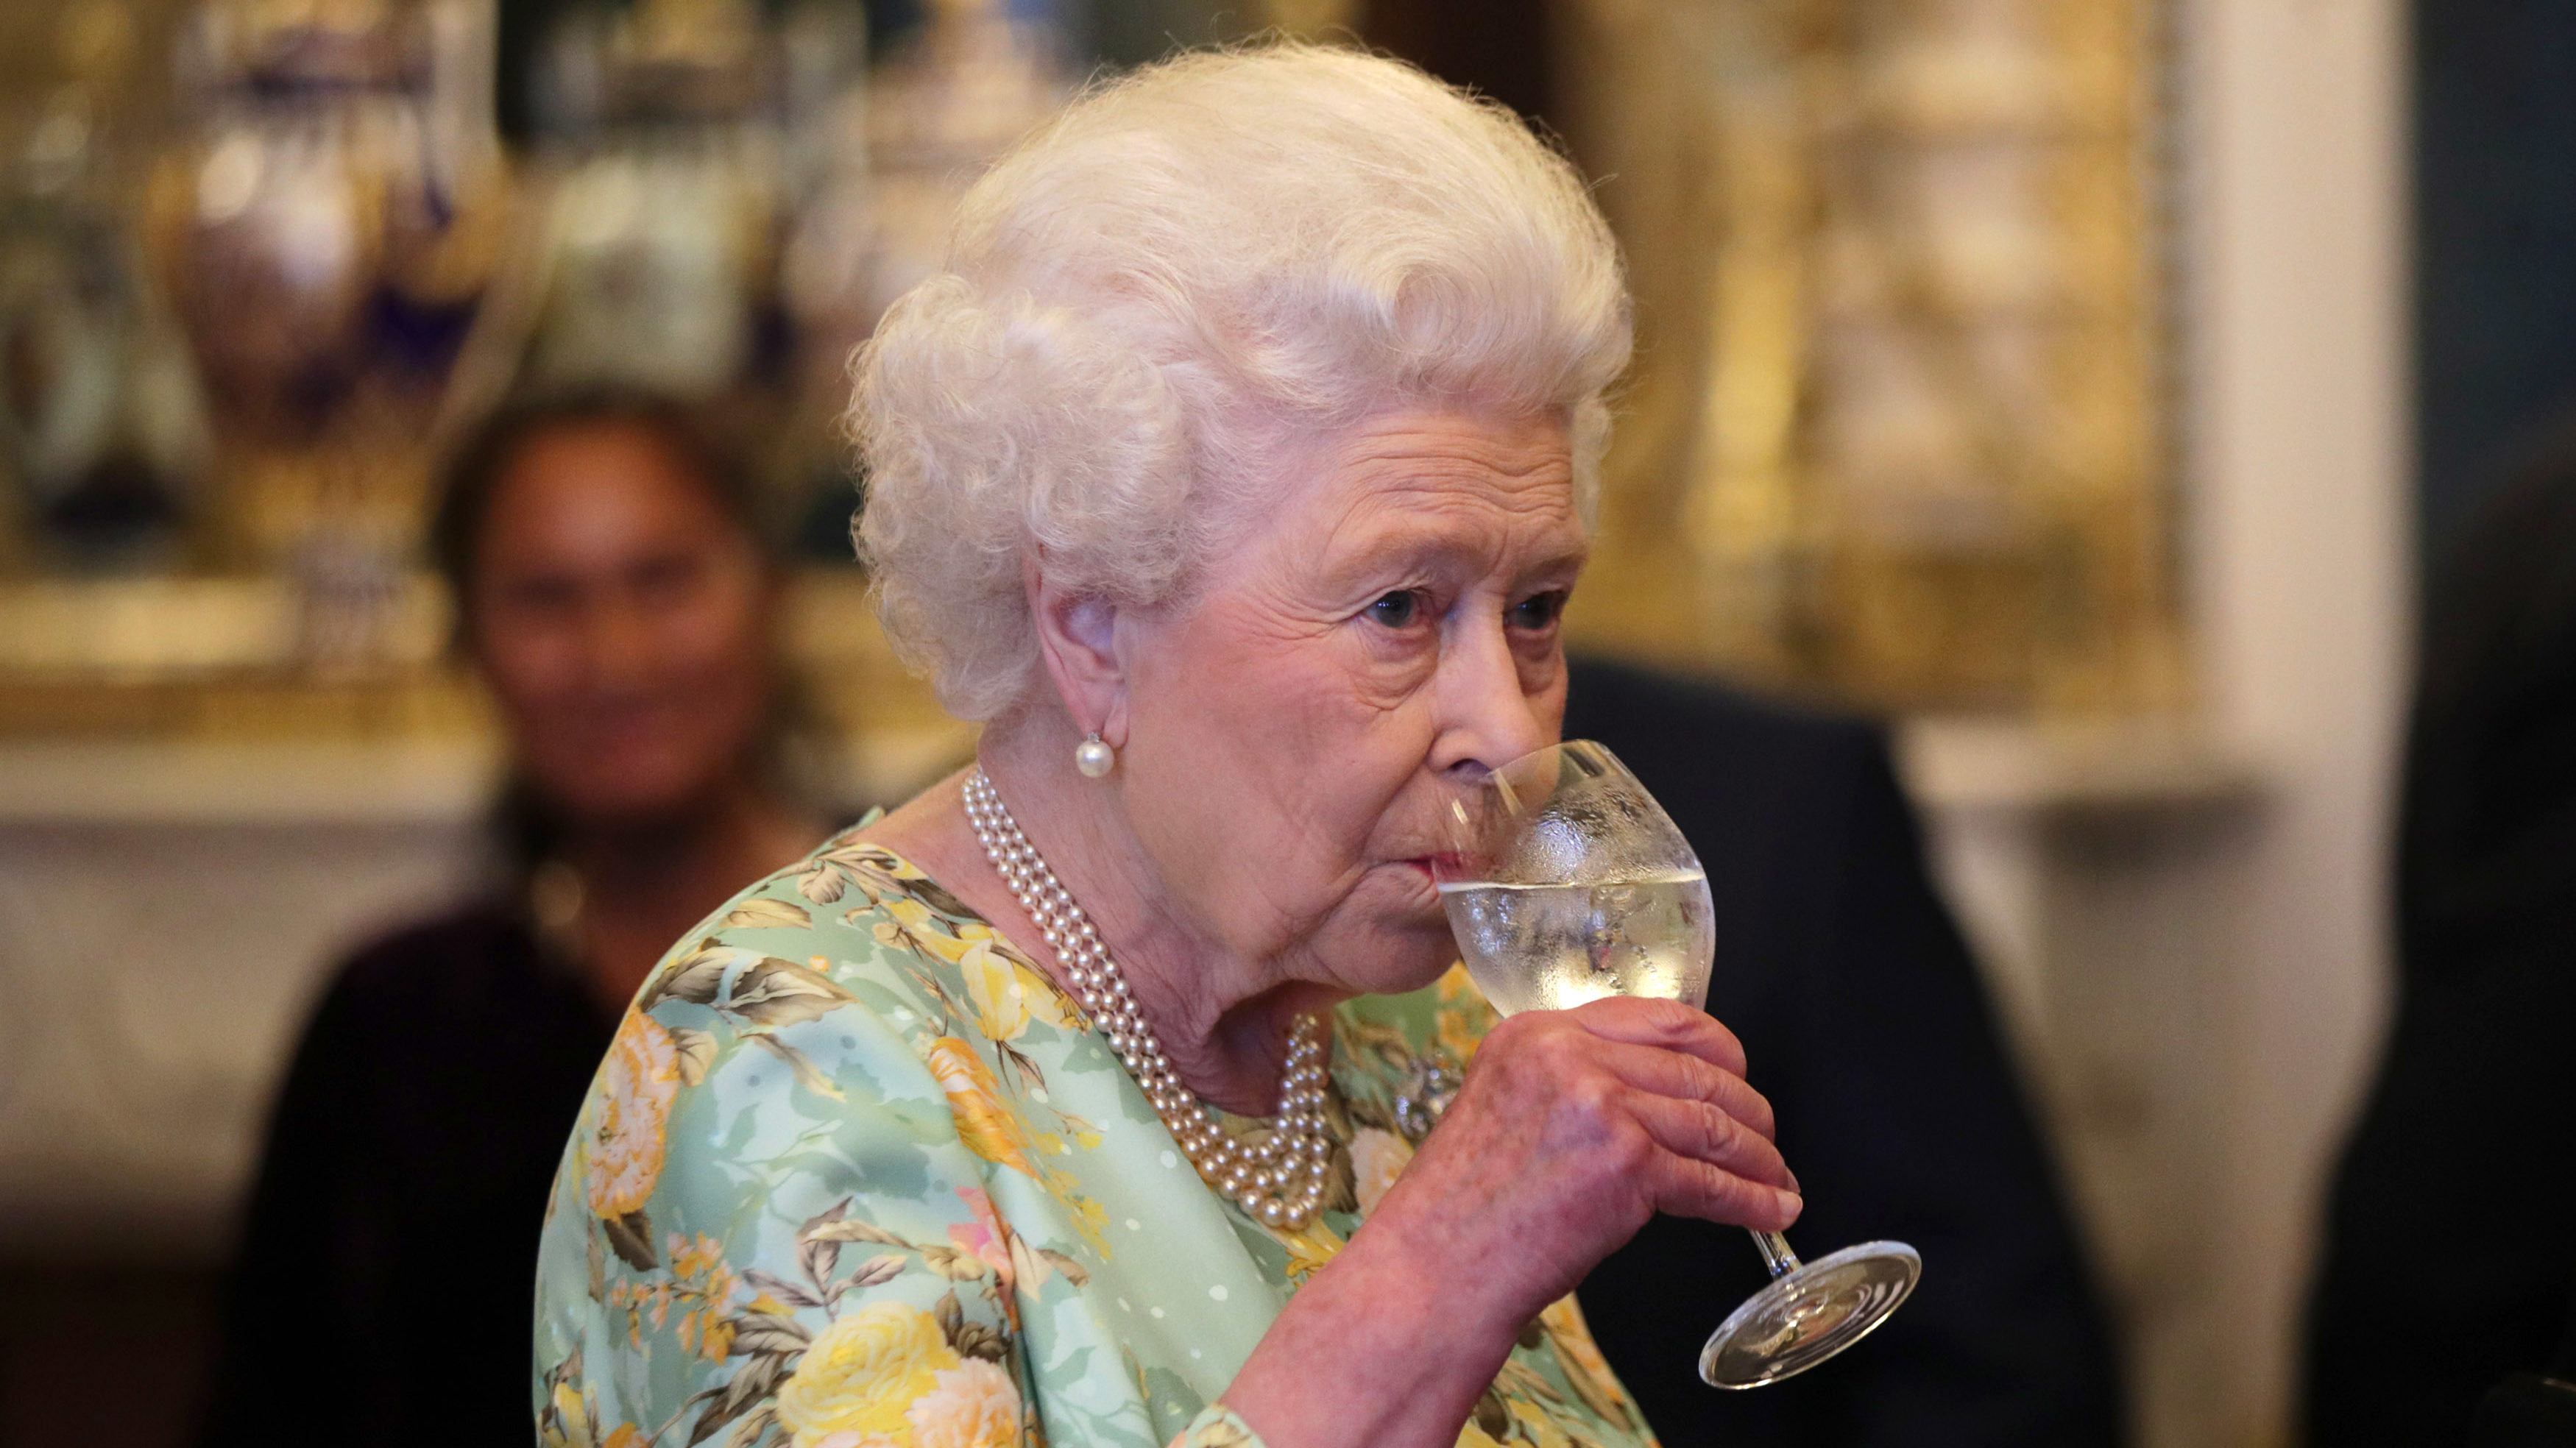 Erzsébet királynő piacra dobta saját ginjét, ami a palota kertjének gyümölcseiből áll